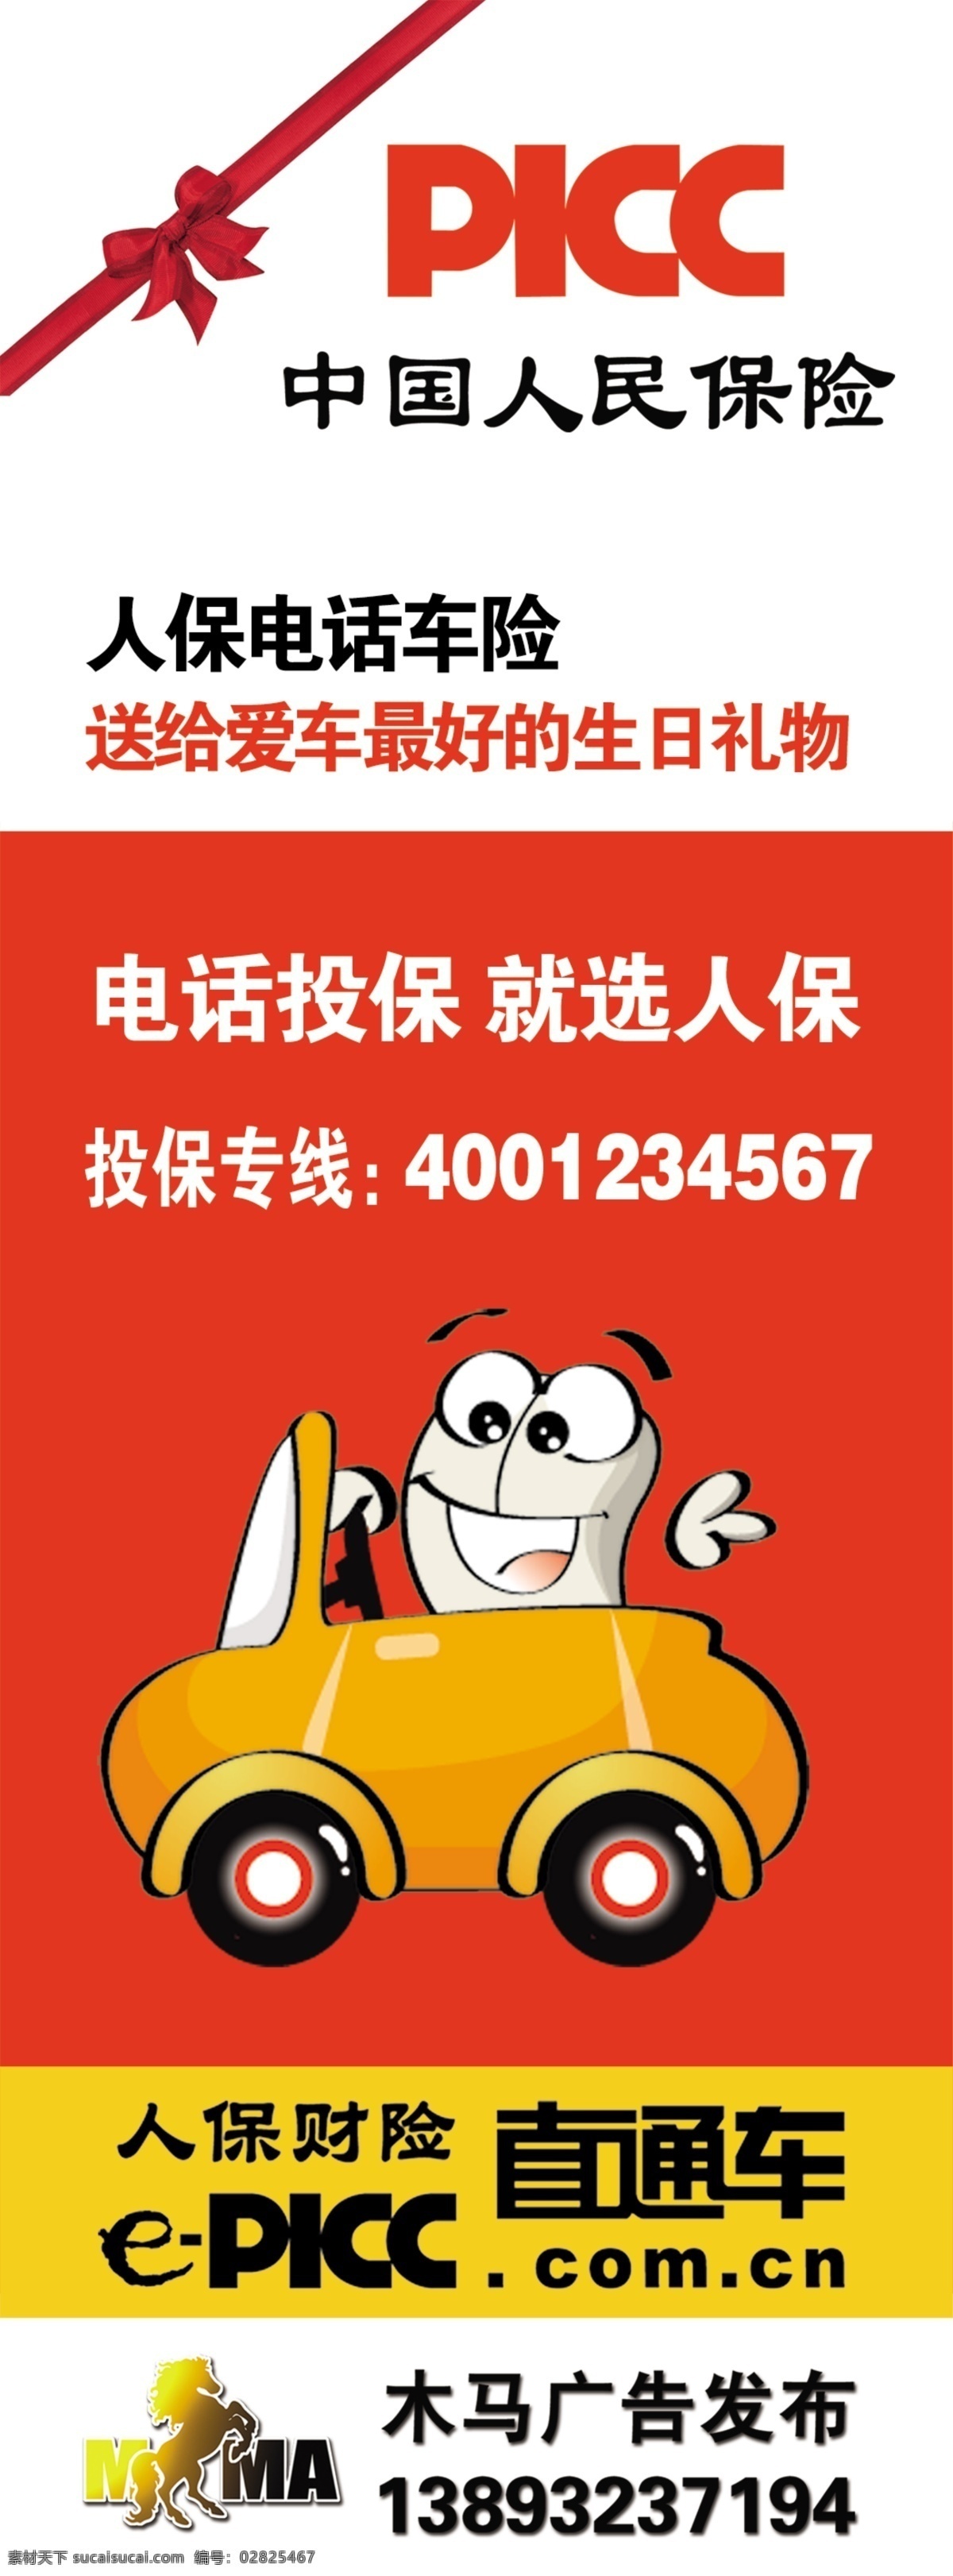 中国 人民 保险 模板 中国人保财险 卡通汽车 红色 展架 保险类 清晰 矢量图 展板模板 广告设计模板 矢量 源文件